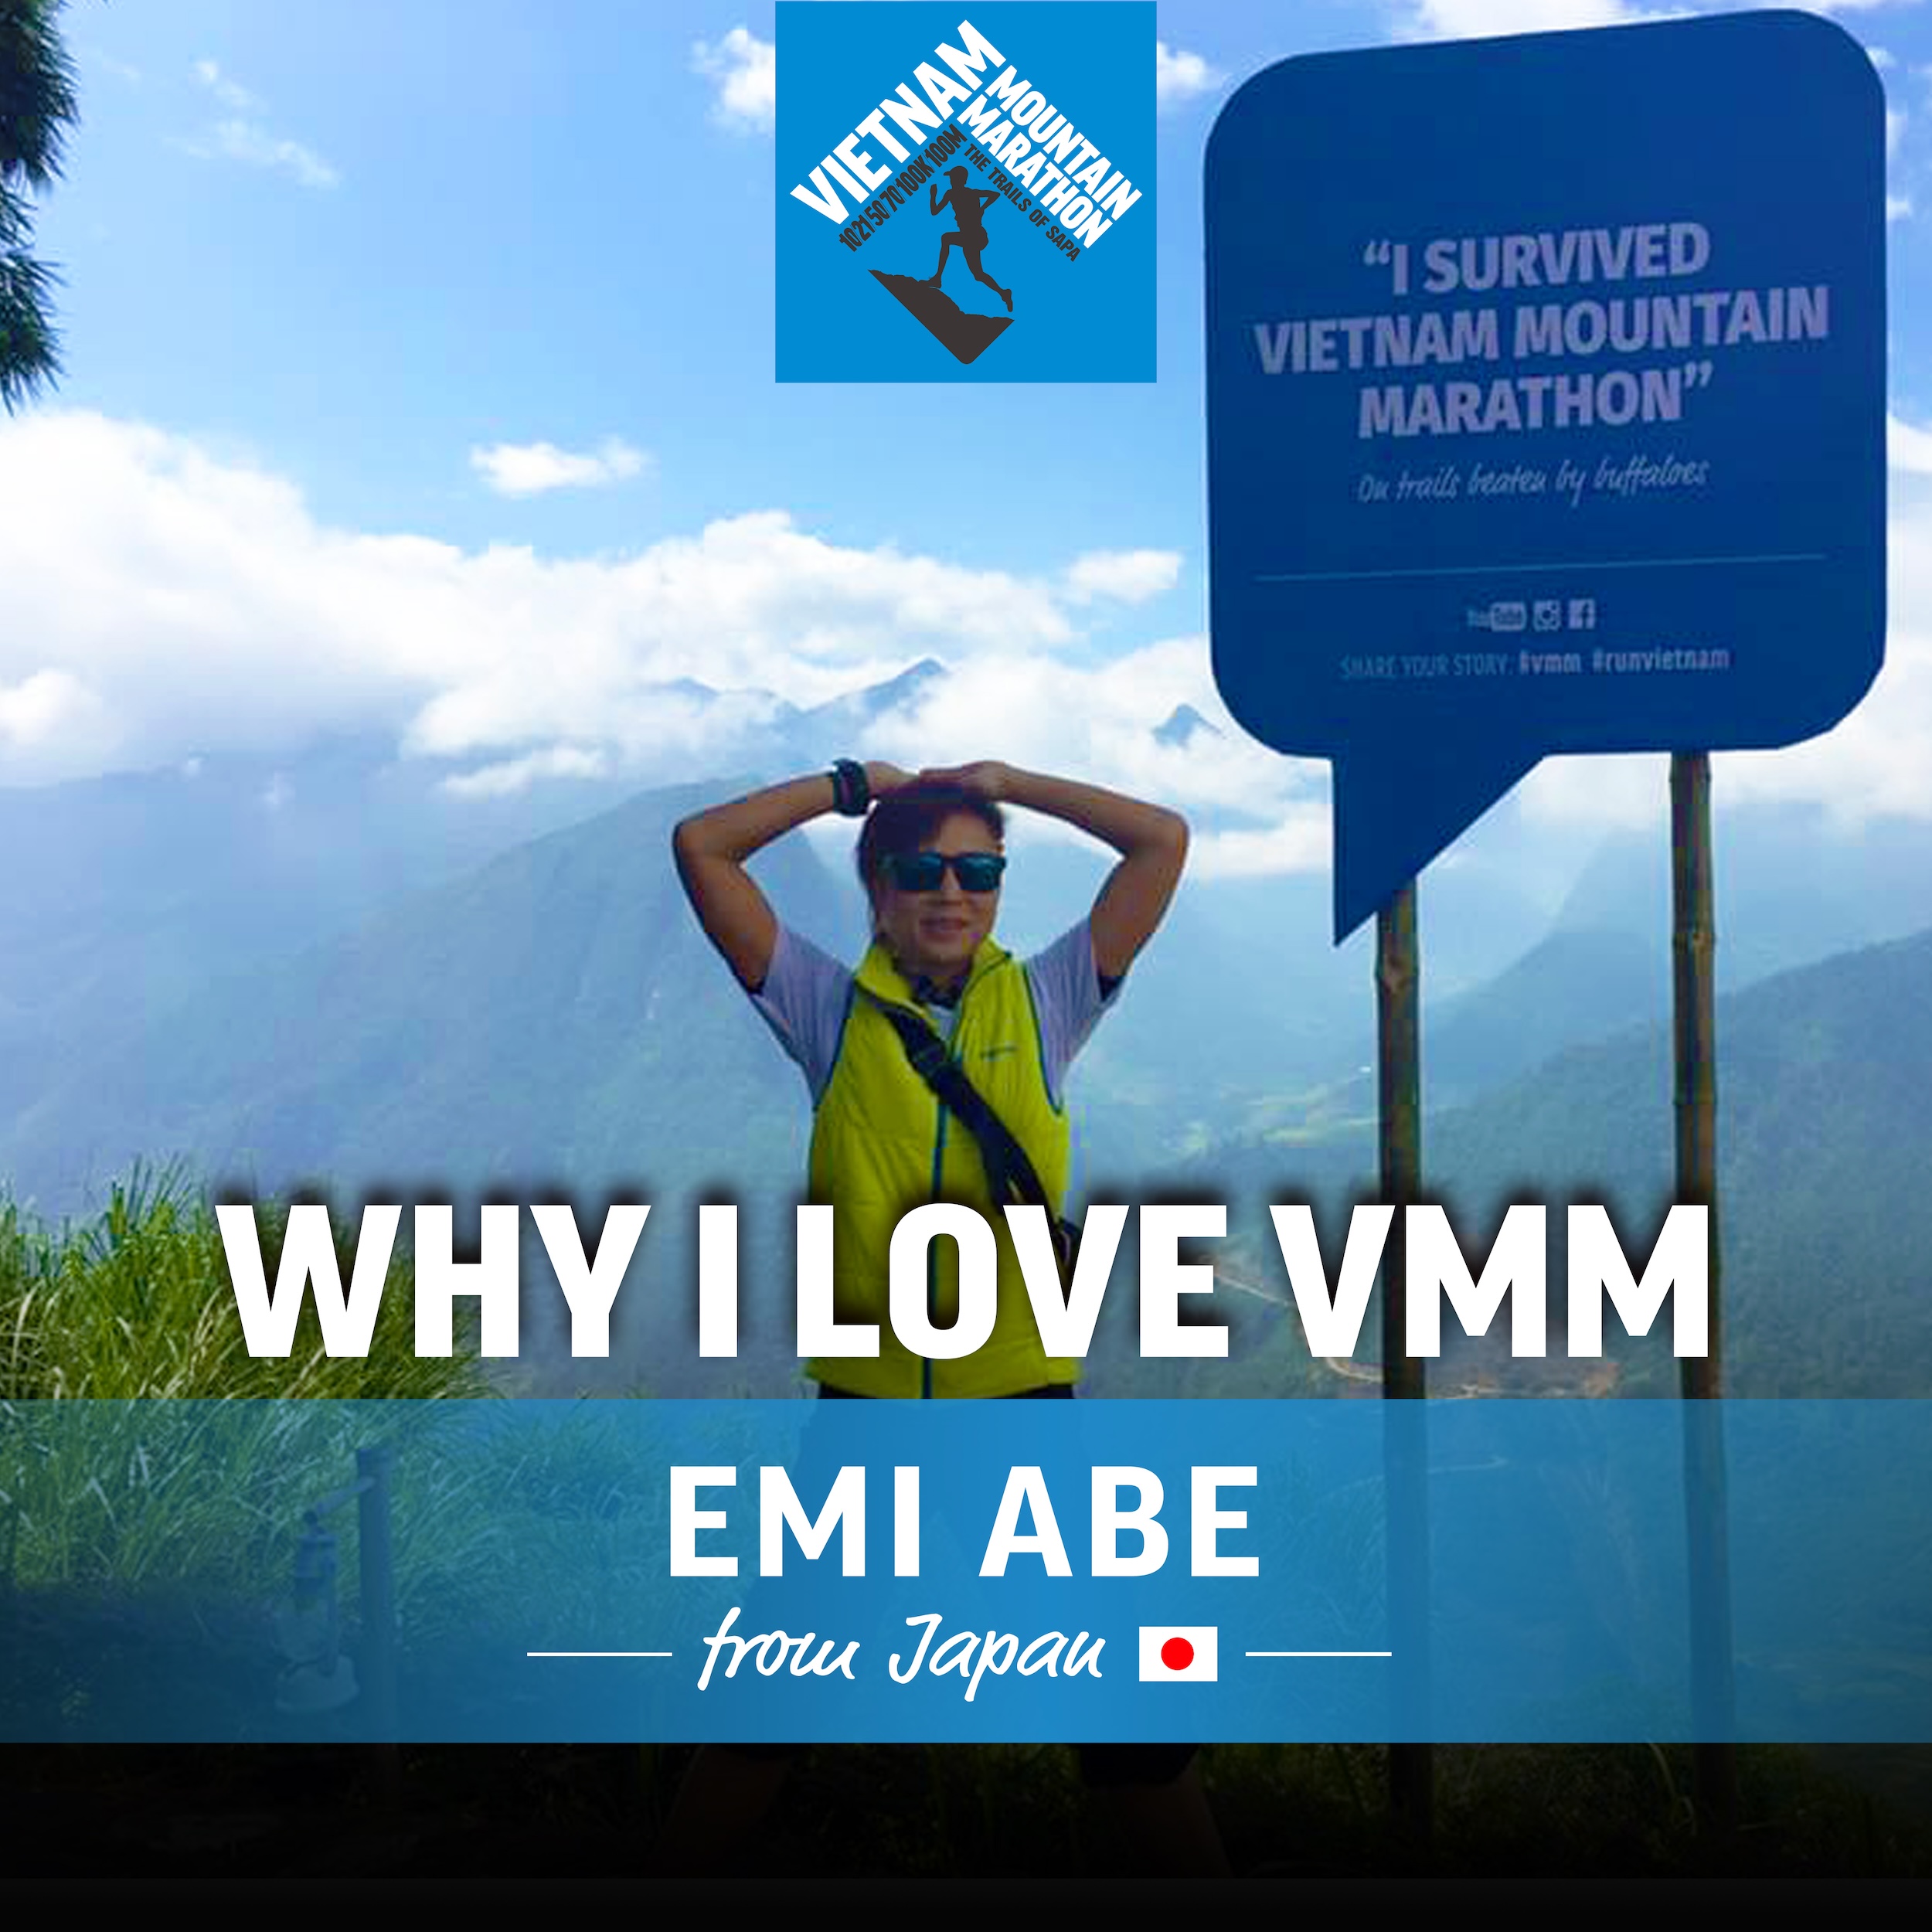 why i love vmm - Emi 0